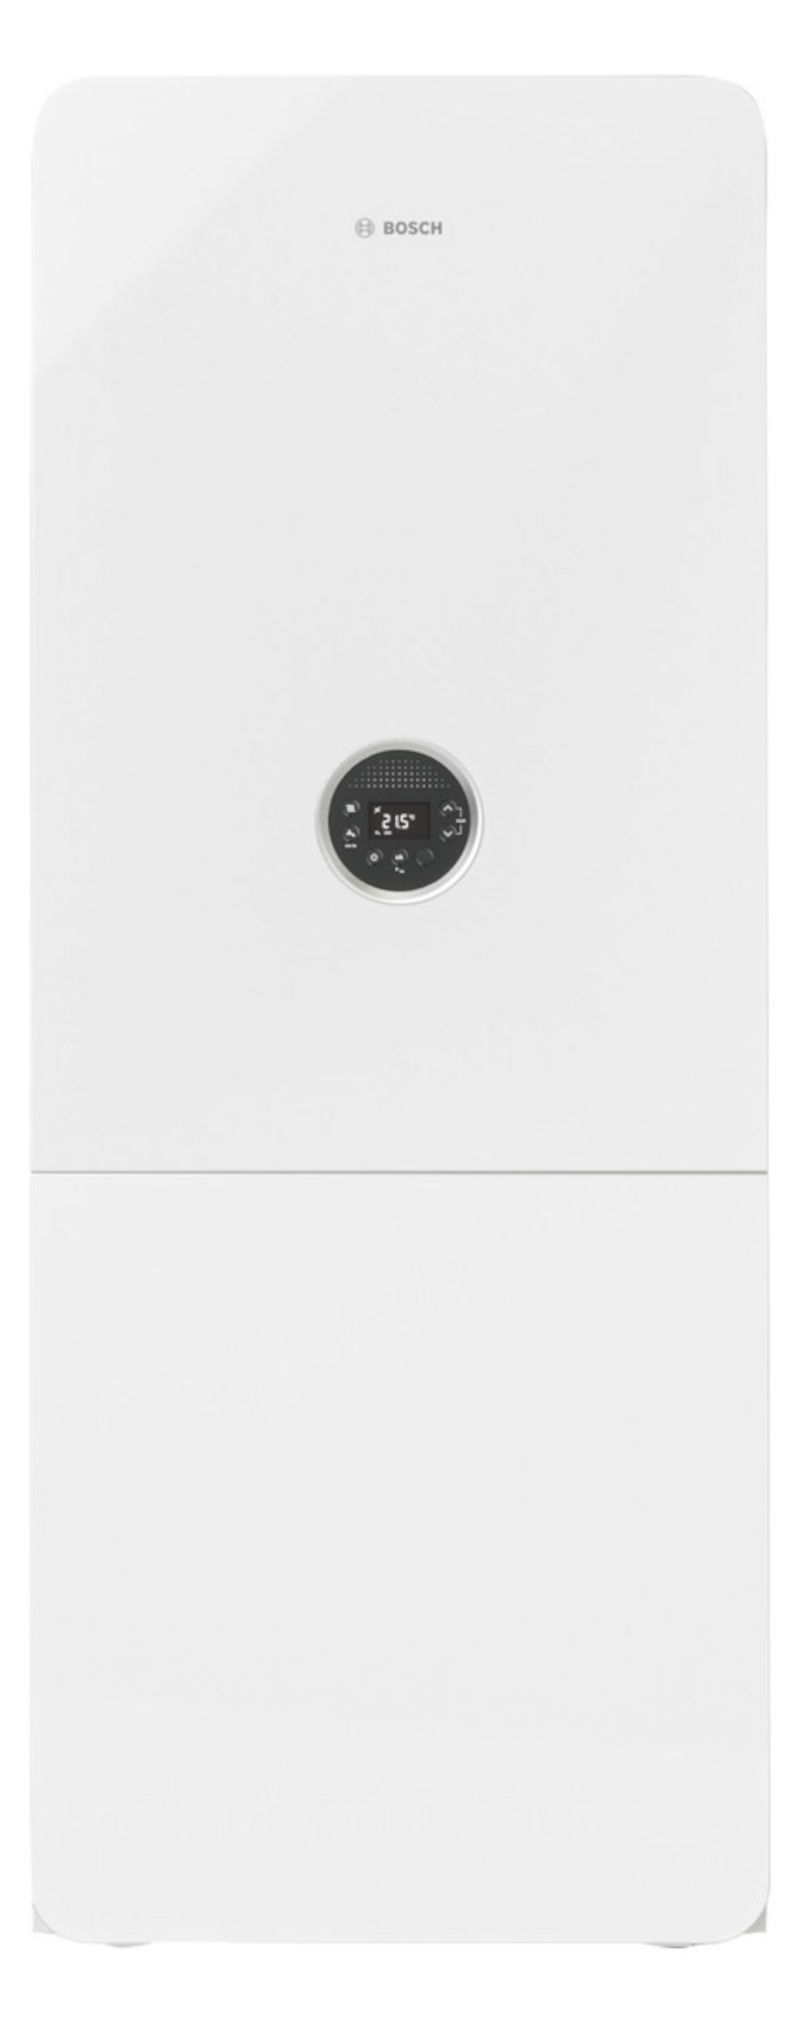 Bosch GC5300i WM 24/100S, Gas-Brennwertgerät, Frontalansicht, auf weißem Hintergrund